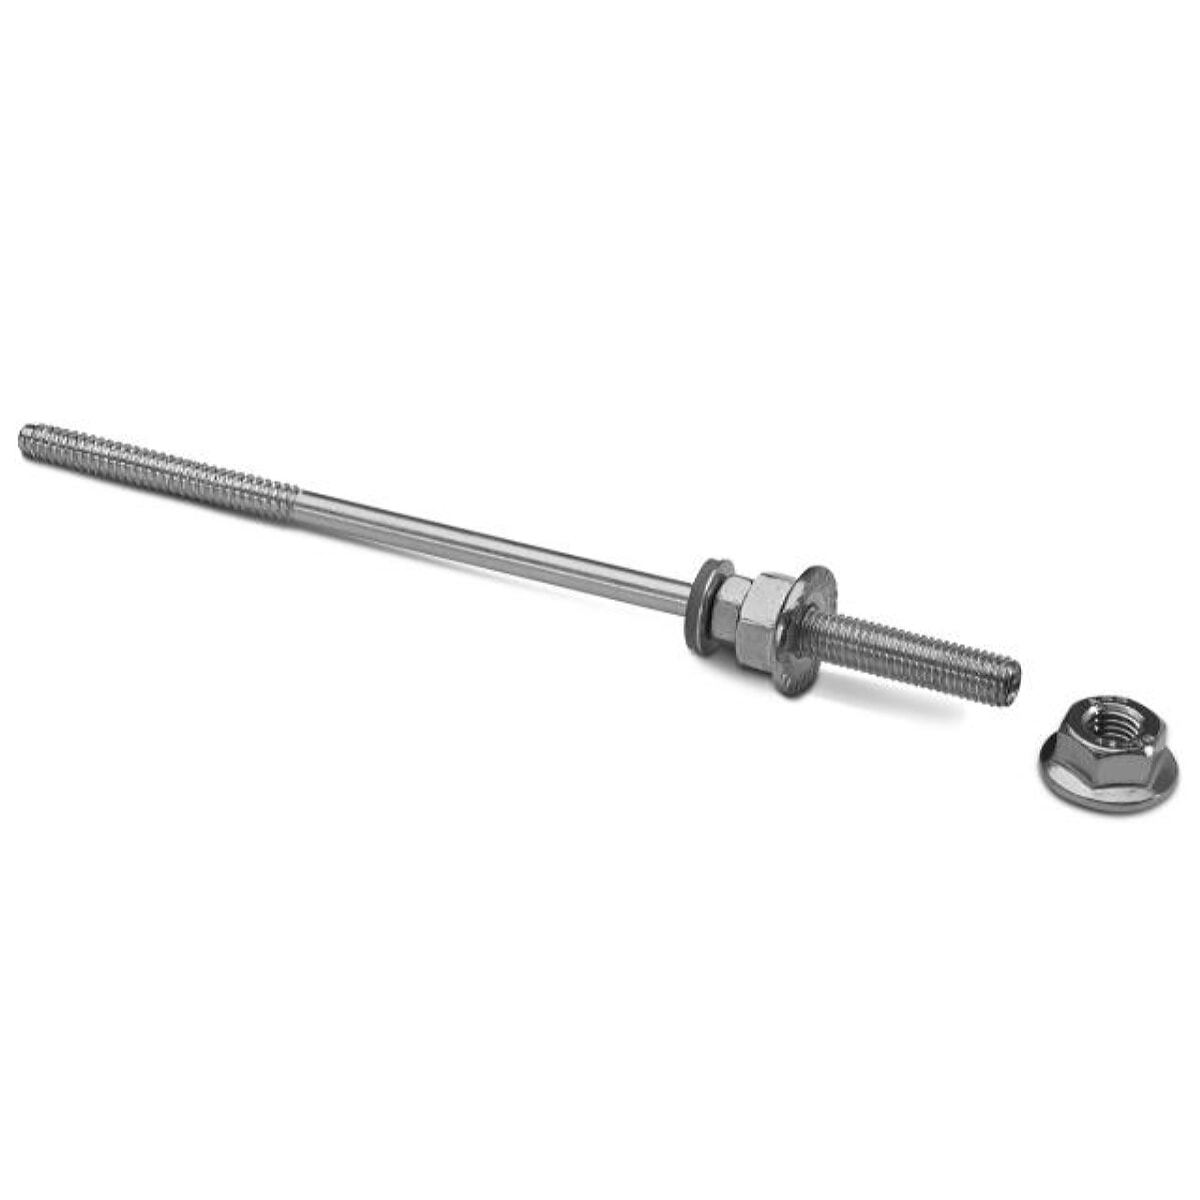 Novotegra top-fix hanger screw set SP 8.0-M10 220 mm